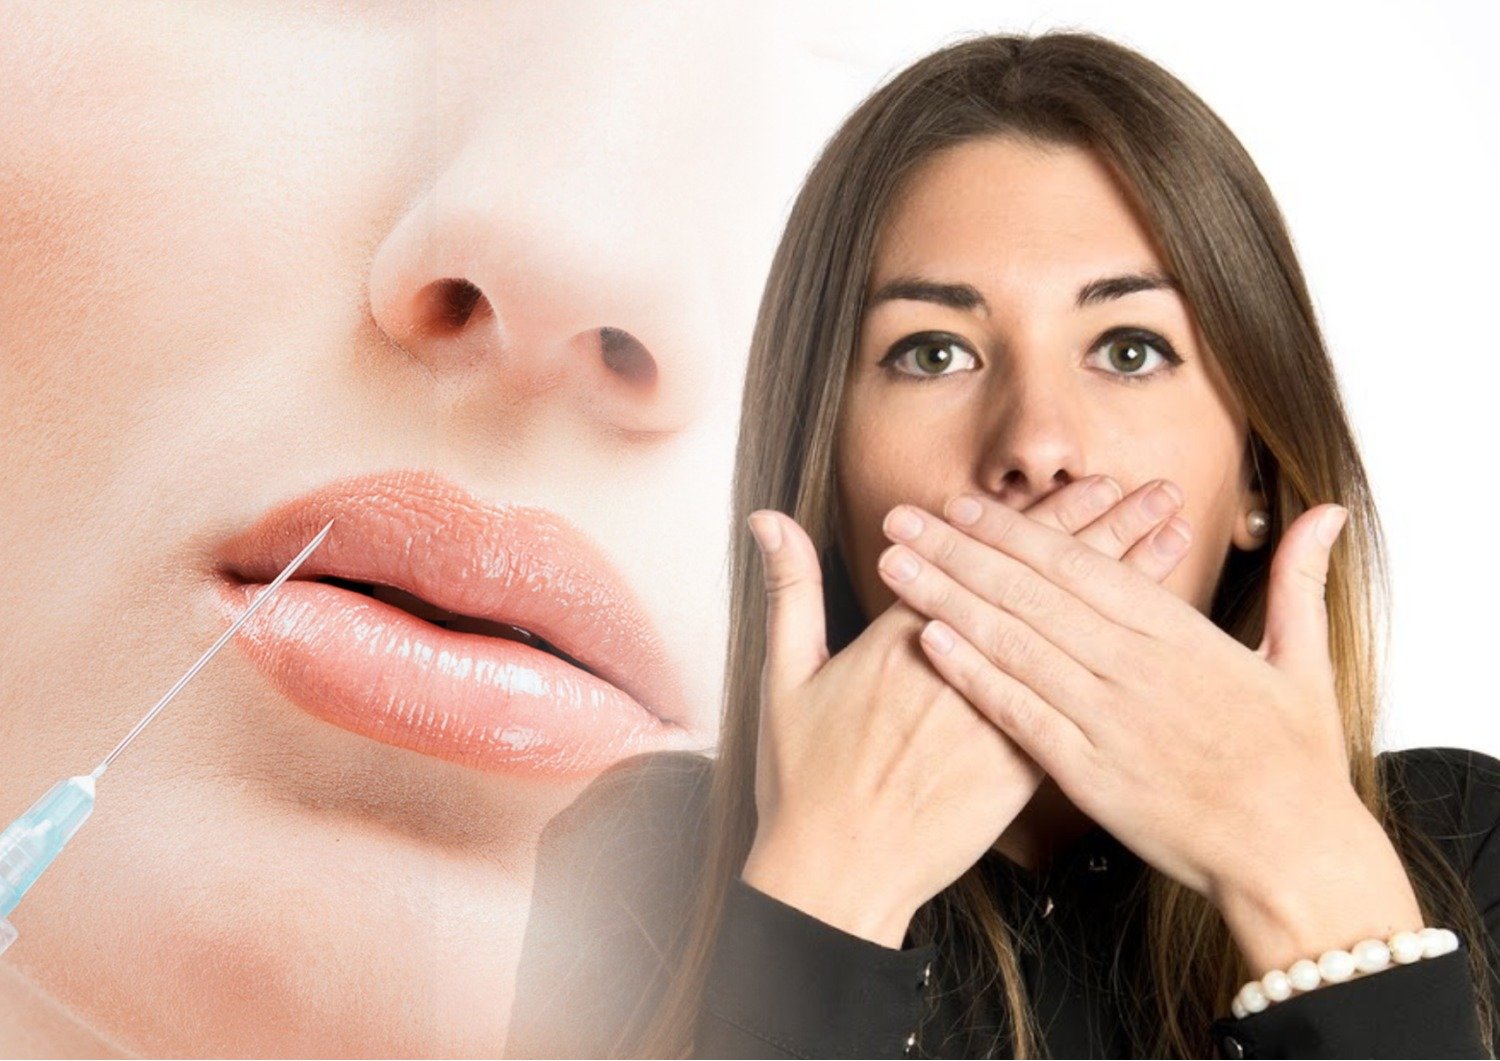 Увлажнение губ отзывы. Увлажнение губ гиалуроновой кислотой. Процедура увлажнения губ. Увлажнение губ гиалуроновой кислотой до и после.